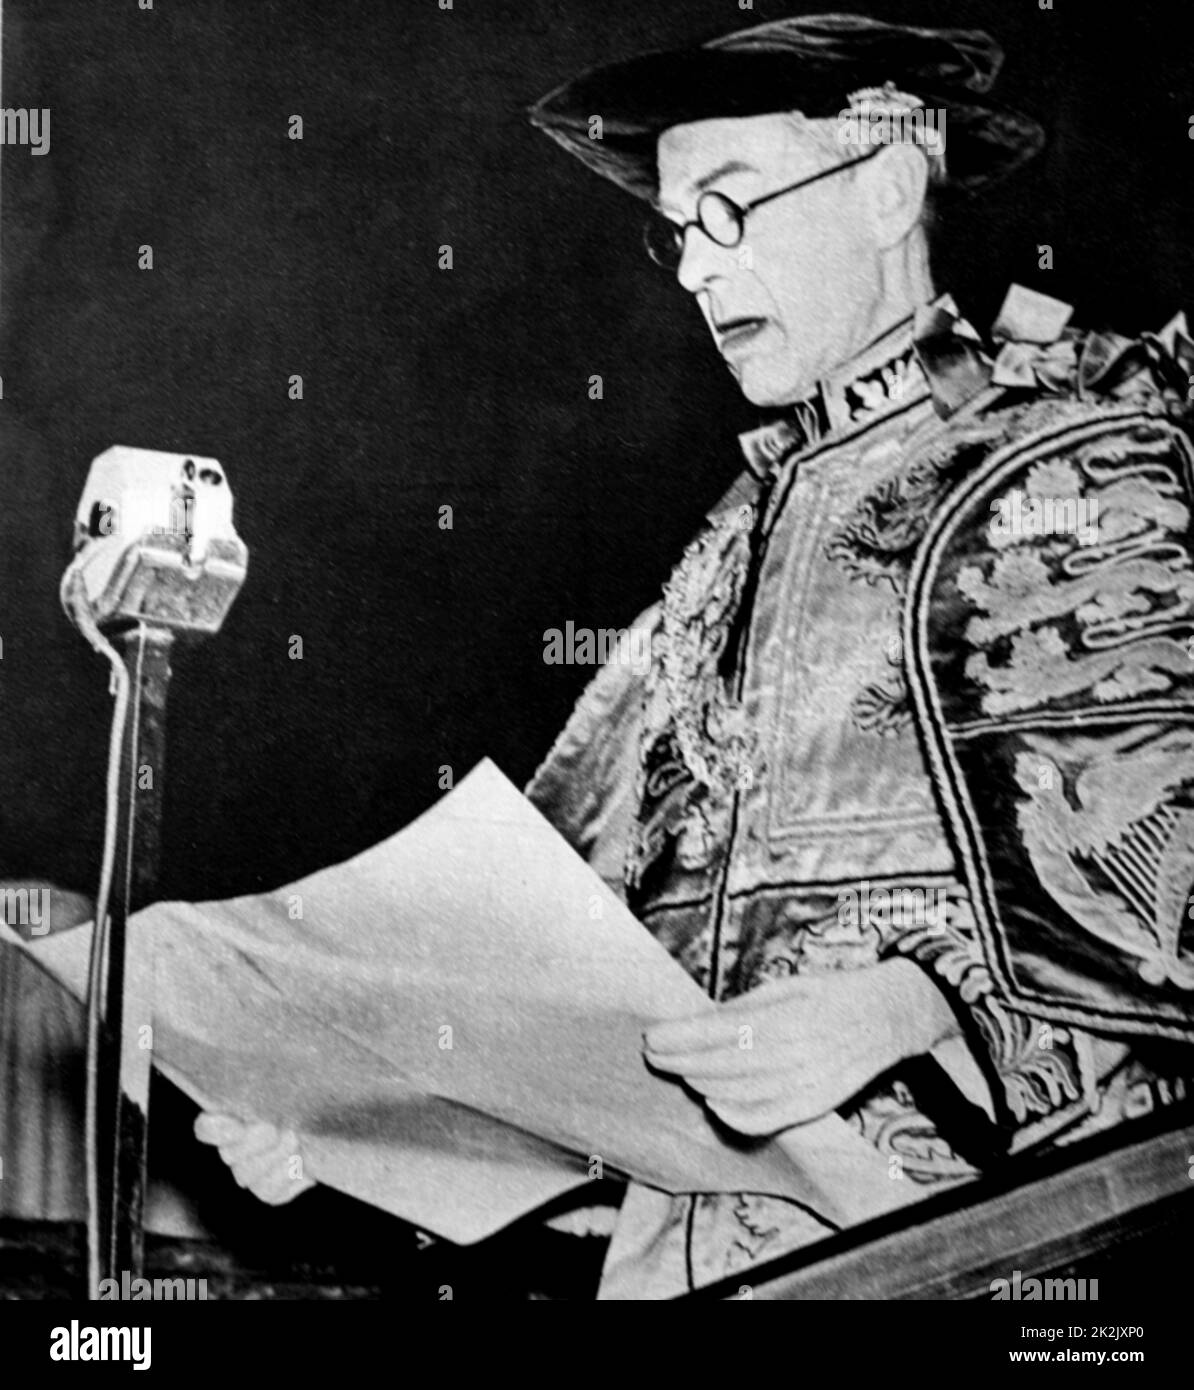 Annonce du nouveau roi, le roi Edward VIII (1894-1972), roi du Royaume-Uni et des dominions de l'Empire britannique, et empereur de l'Inde, jusqu'à son abdication. Daté du 20th siècle Banque D'Images